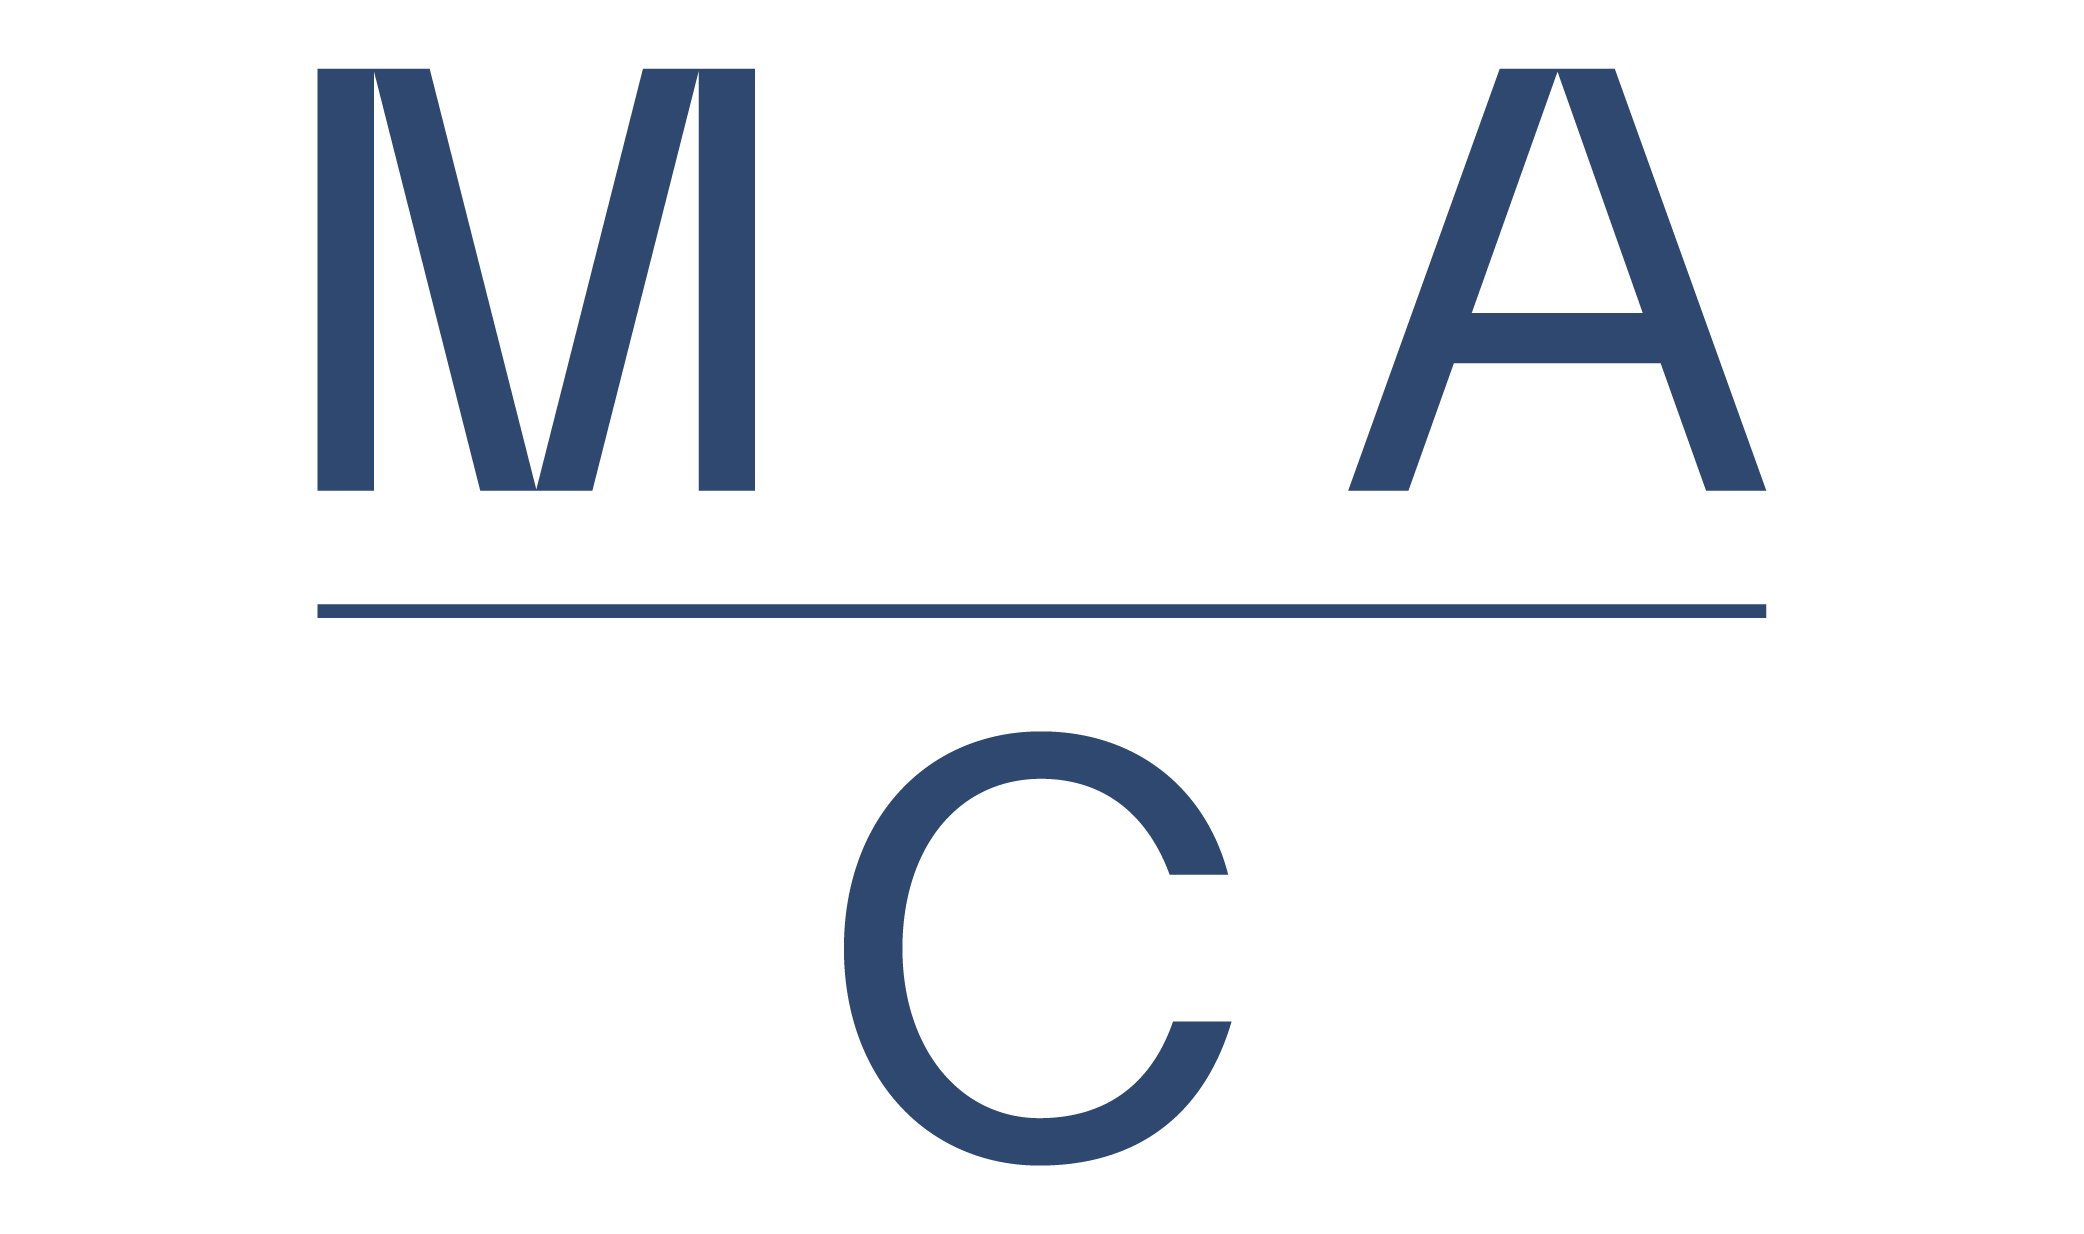 logo_mac